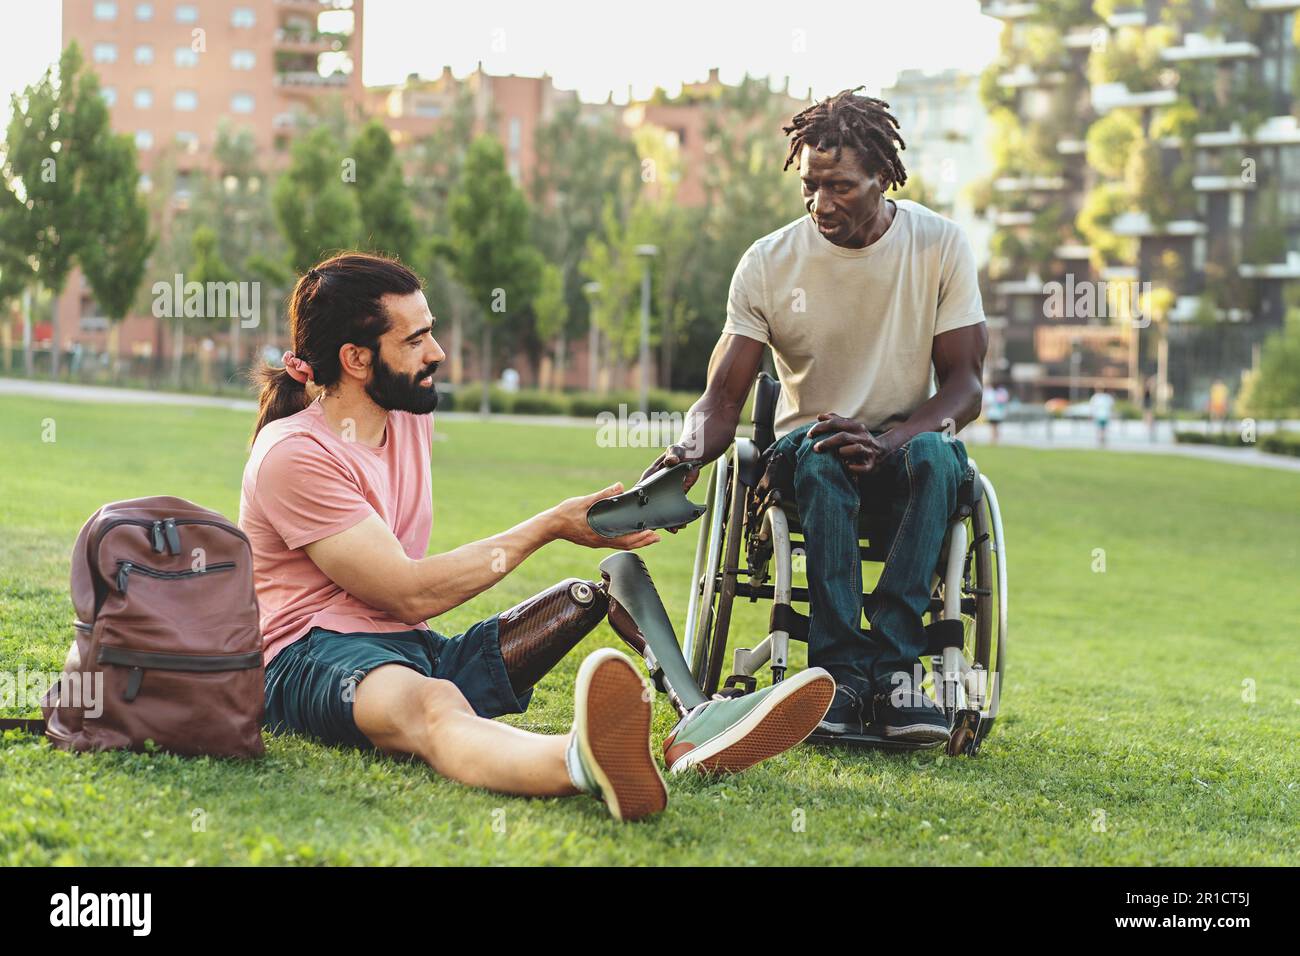 Ein hispanischer Mann mit Bart, Pferdeschwanz und Beinprothese sitzt auf dem Gras in einem öffentlichen Park und zeigt seinem afrikanischen Freund im Rollstuhl ein Stück von einem Stockfoto